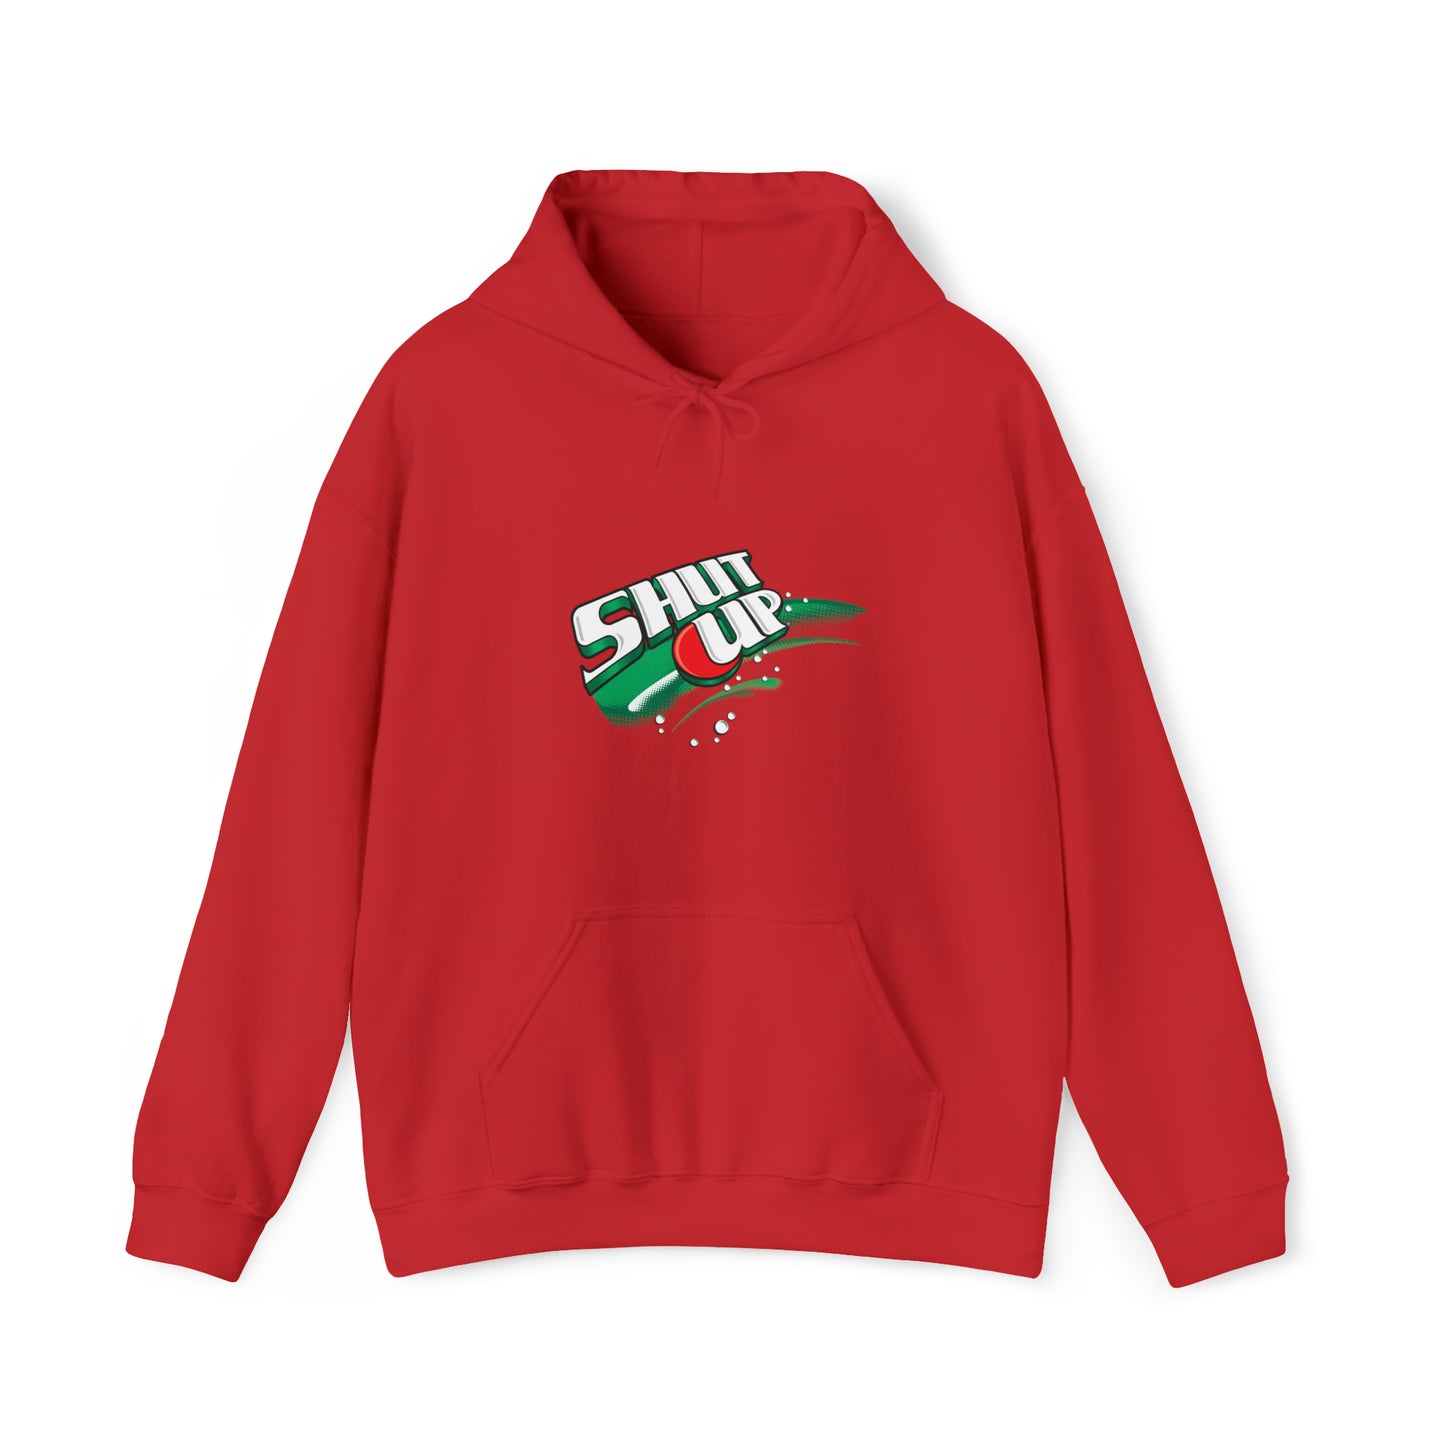 Custom Parody Hooded Sweatshirt, Shut-up design